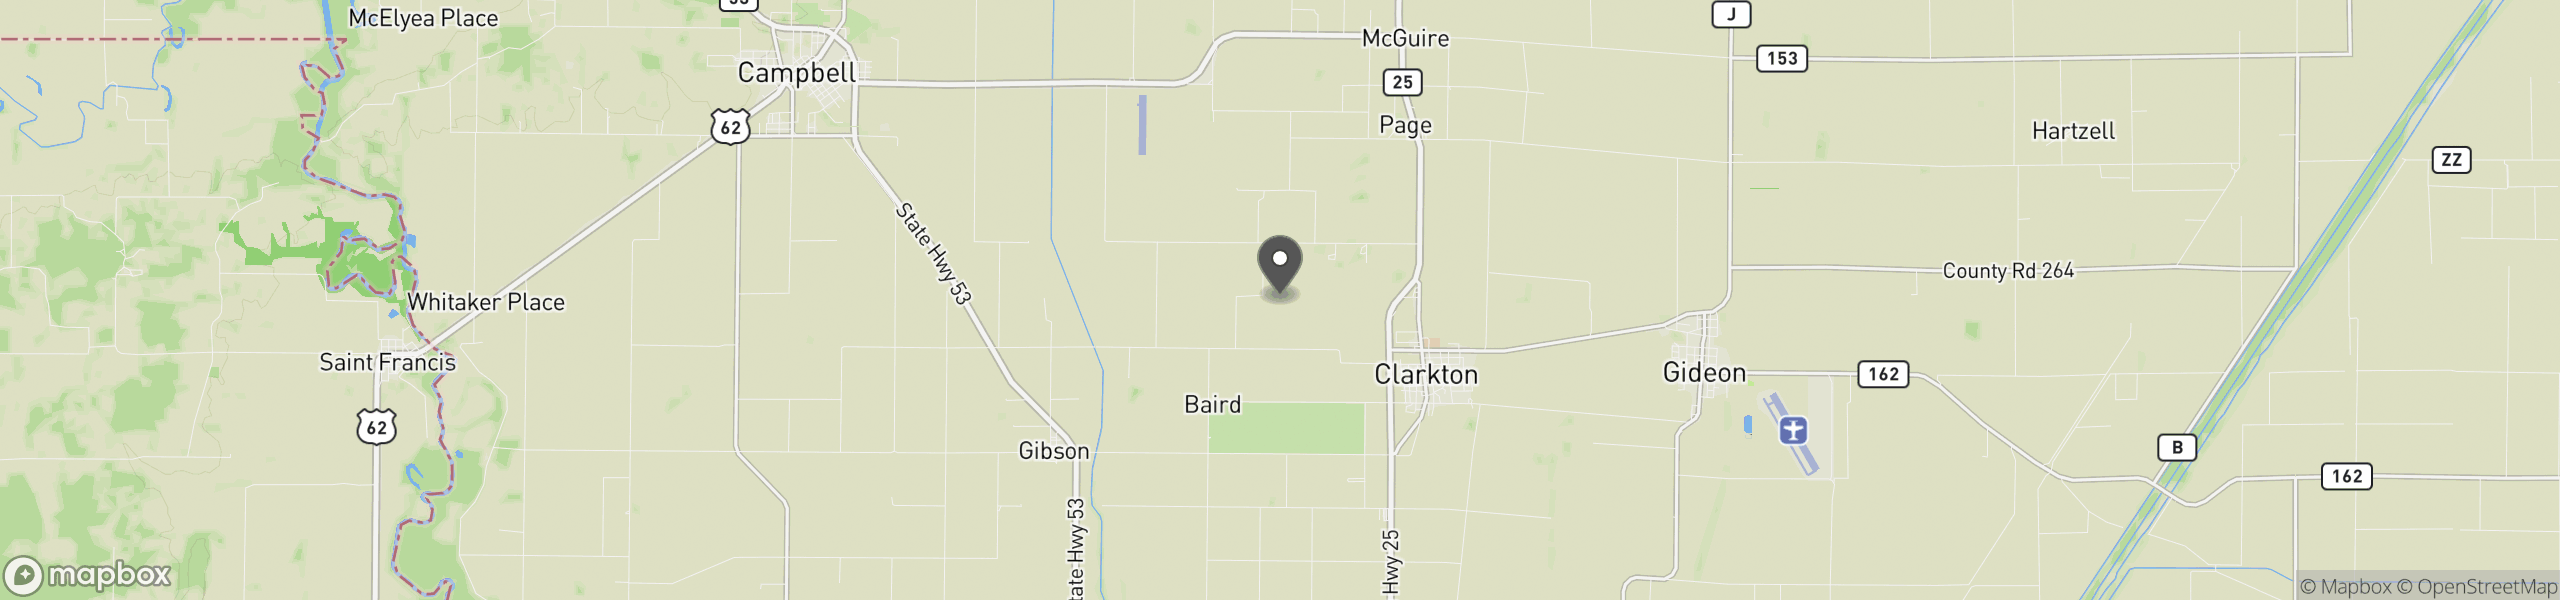 Clarkton, MO 63837